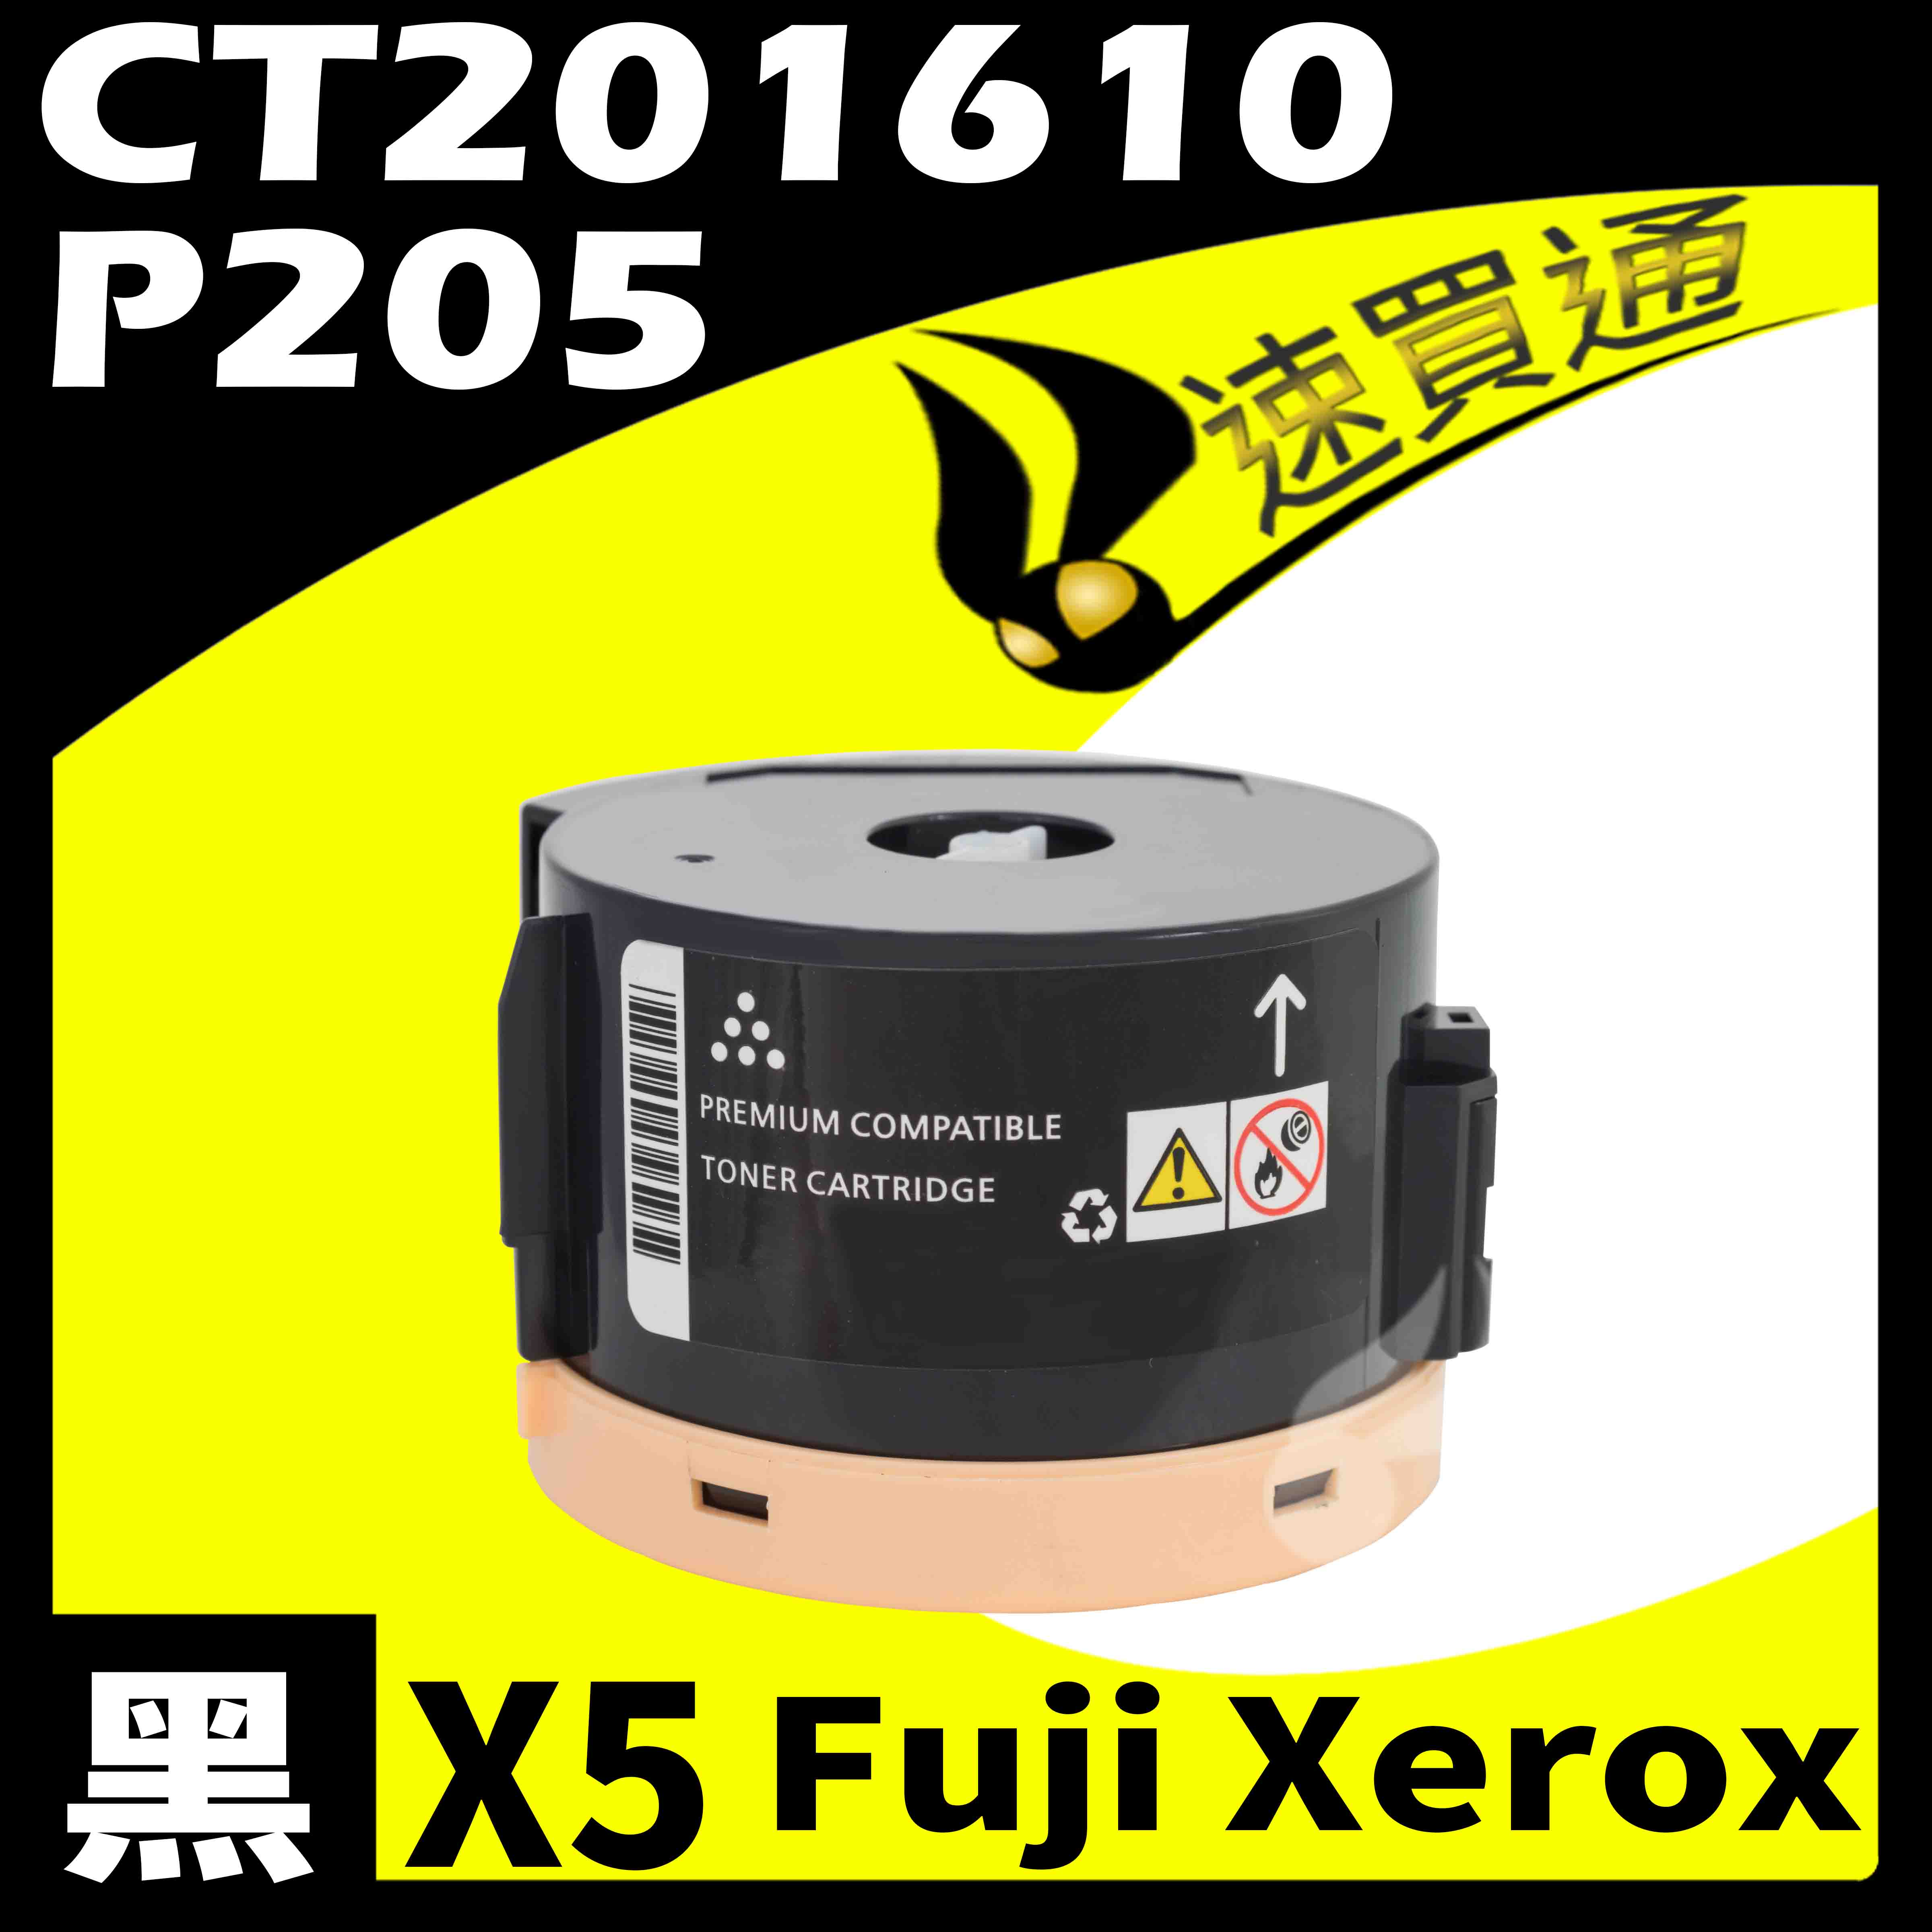 【速買通】超值5件組 Fuji Xerox P205/CT201610 相容碳粉匣